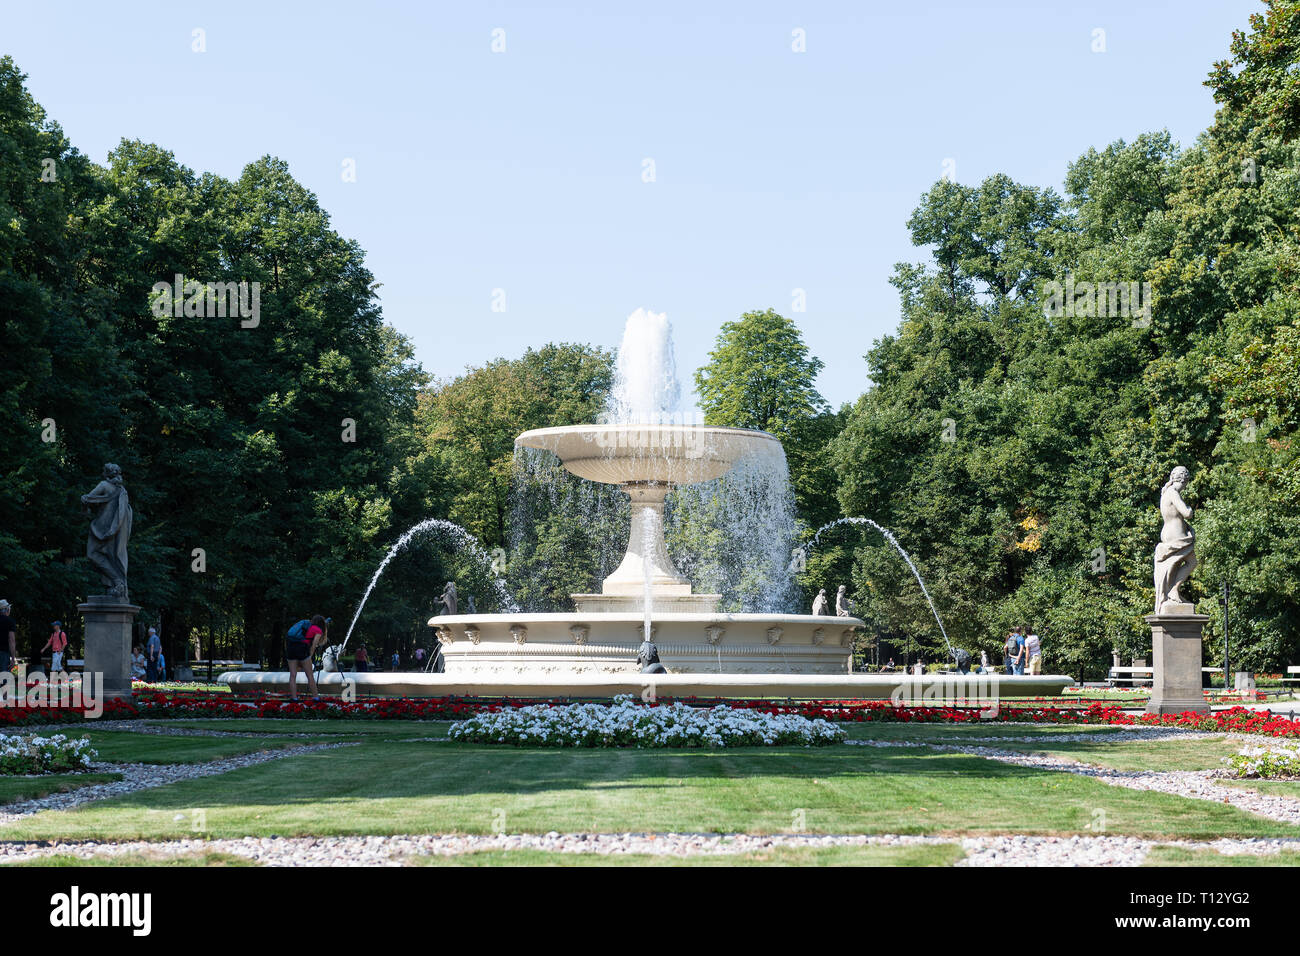 Warschau, Polen - 23. August 2018: Touristen durch Brunnen weißen Blüten im Sommer Saxon Gardens Park mit Spritzen spritzen Skulpturen Stockfoto